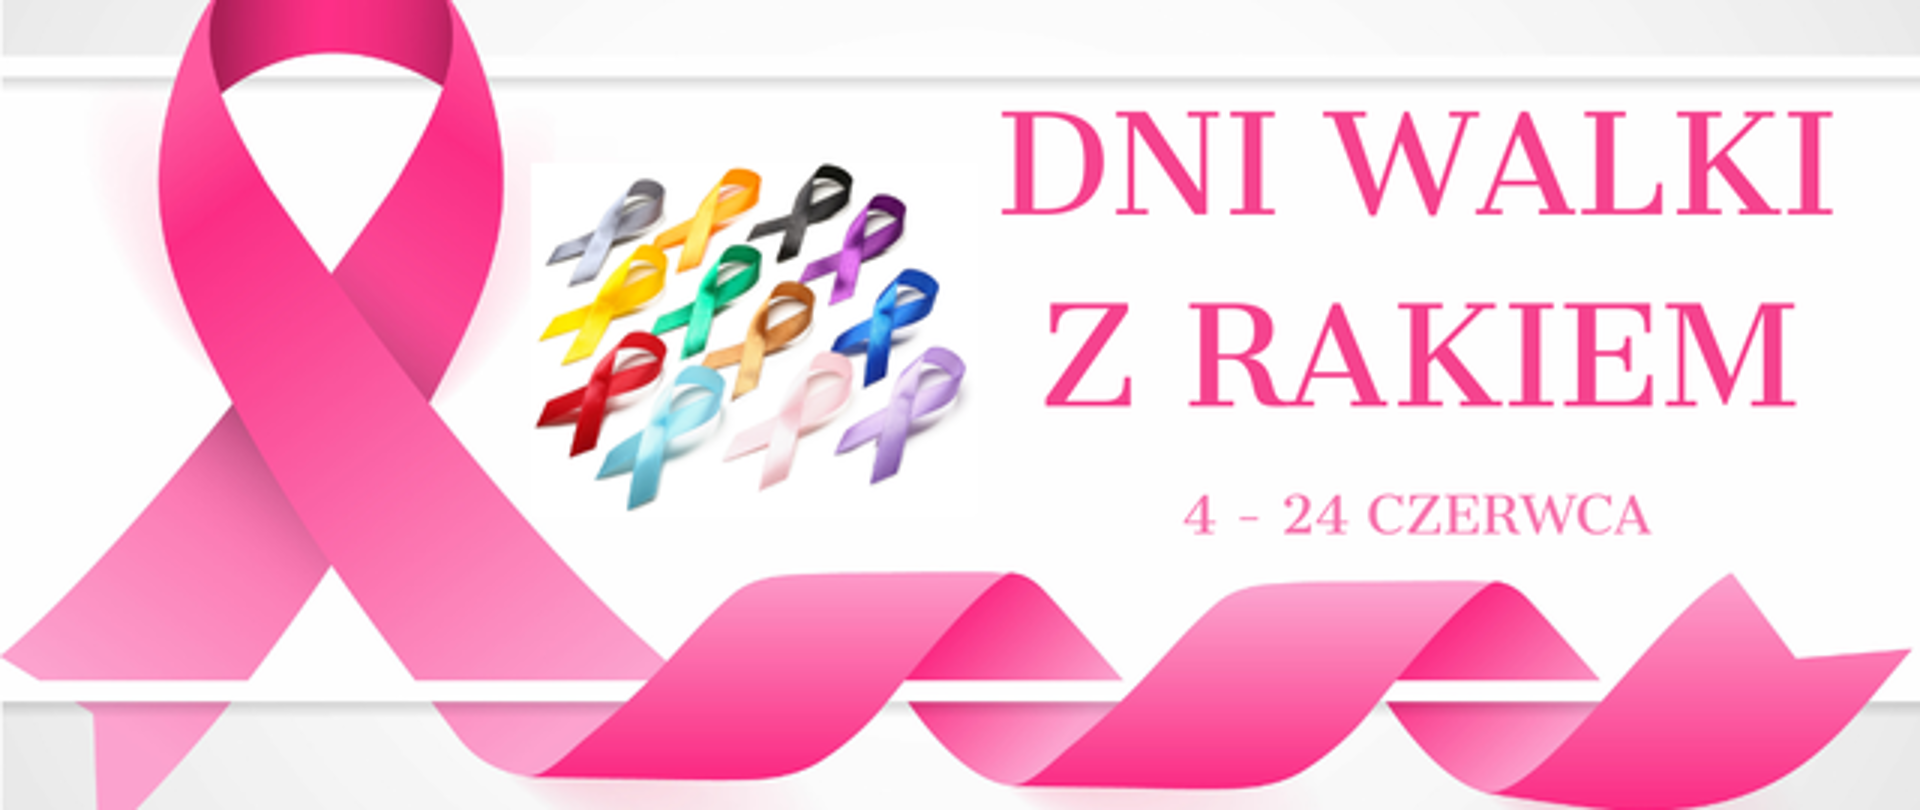 4 - 24 czerwca Dni Walki z Rakiem